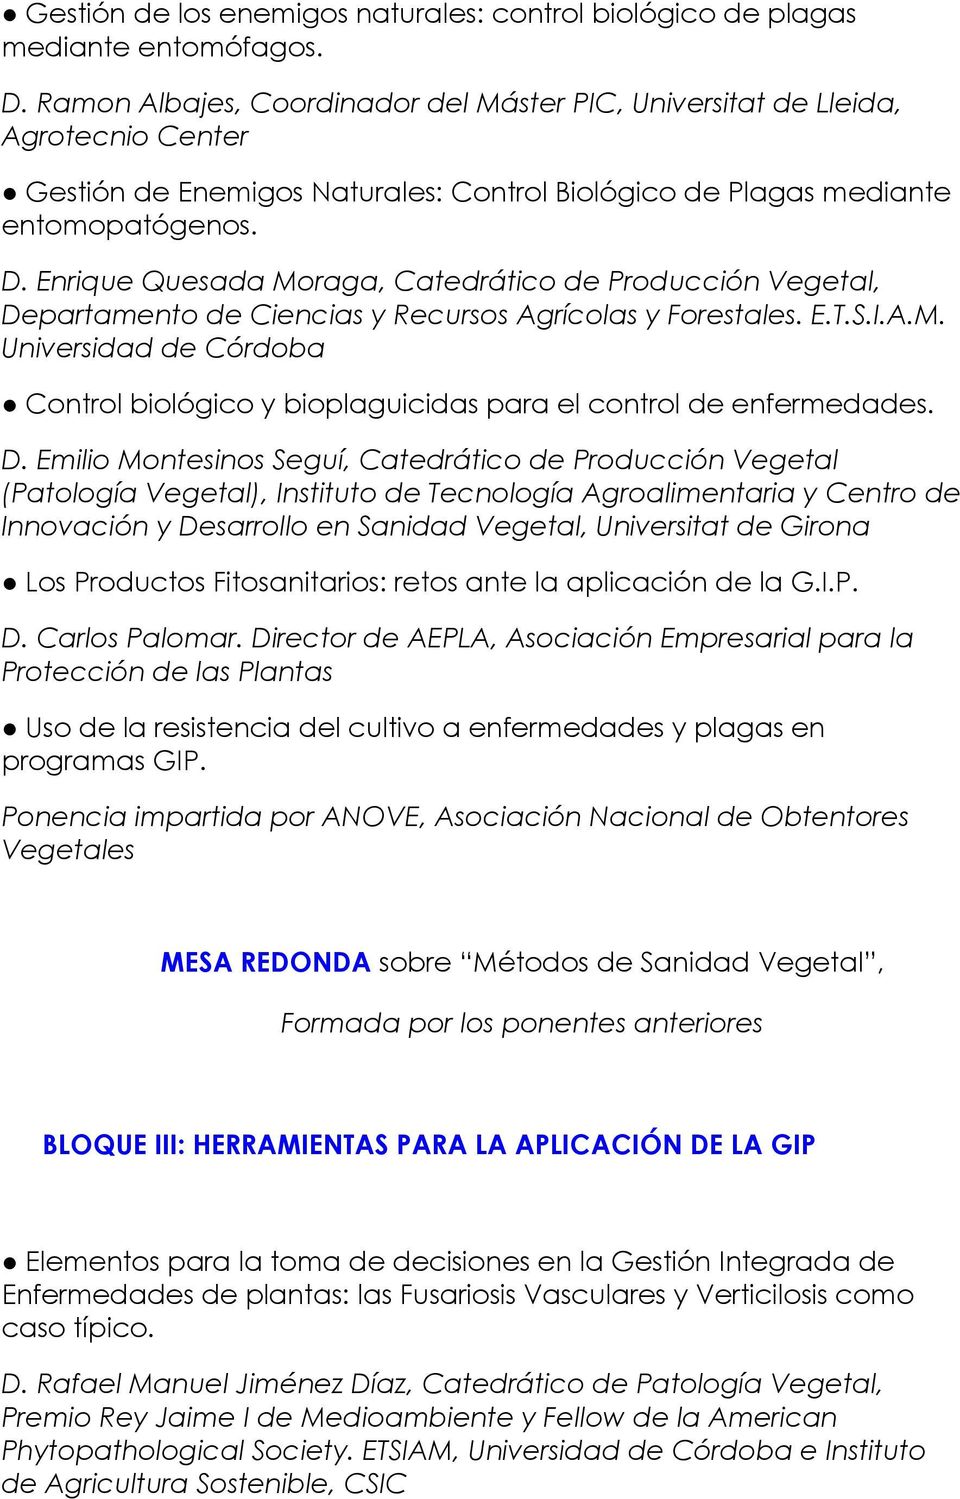 Enrique Quesada Moraga, Catedrático de Producción Vegetal, Departamento de Ciencias y Recursos Agrícolas y Forestales. E.T.S.I.A.M. Universidad de Córdoba Control biológico y bioplaguicidas para el control de enfermedades.